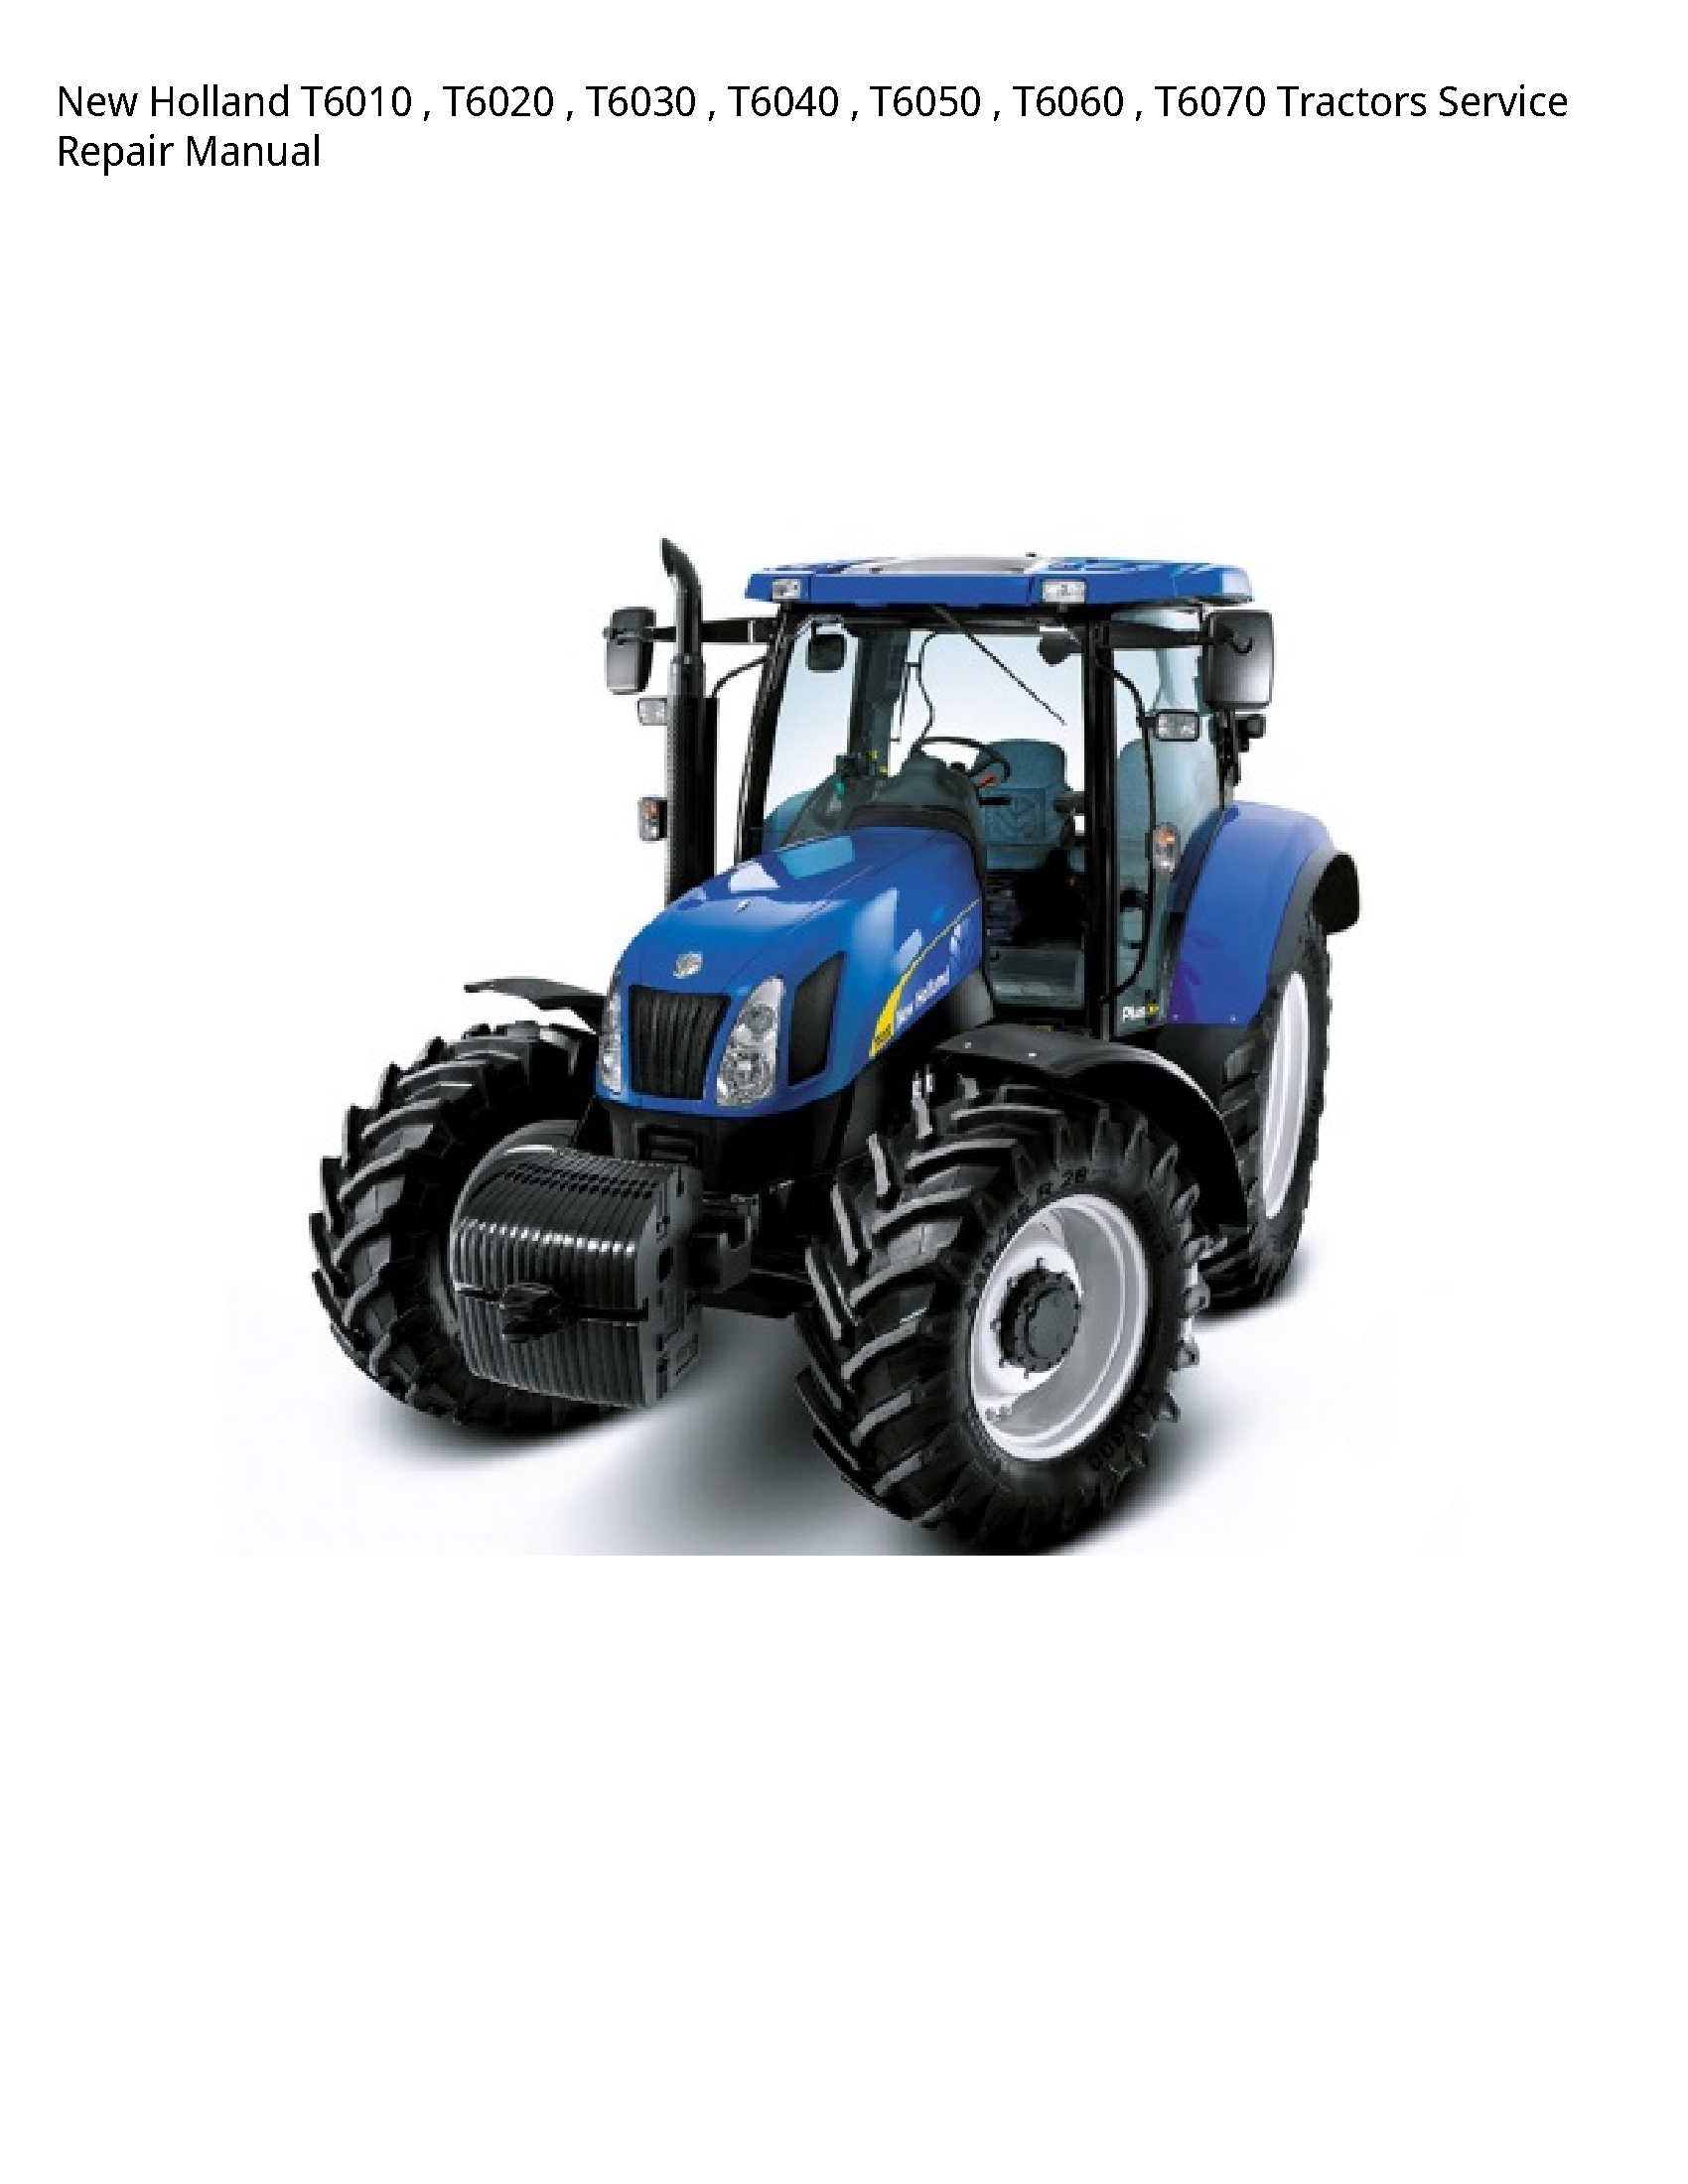 New Holland T6010 Tractors manual